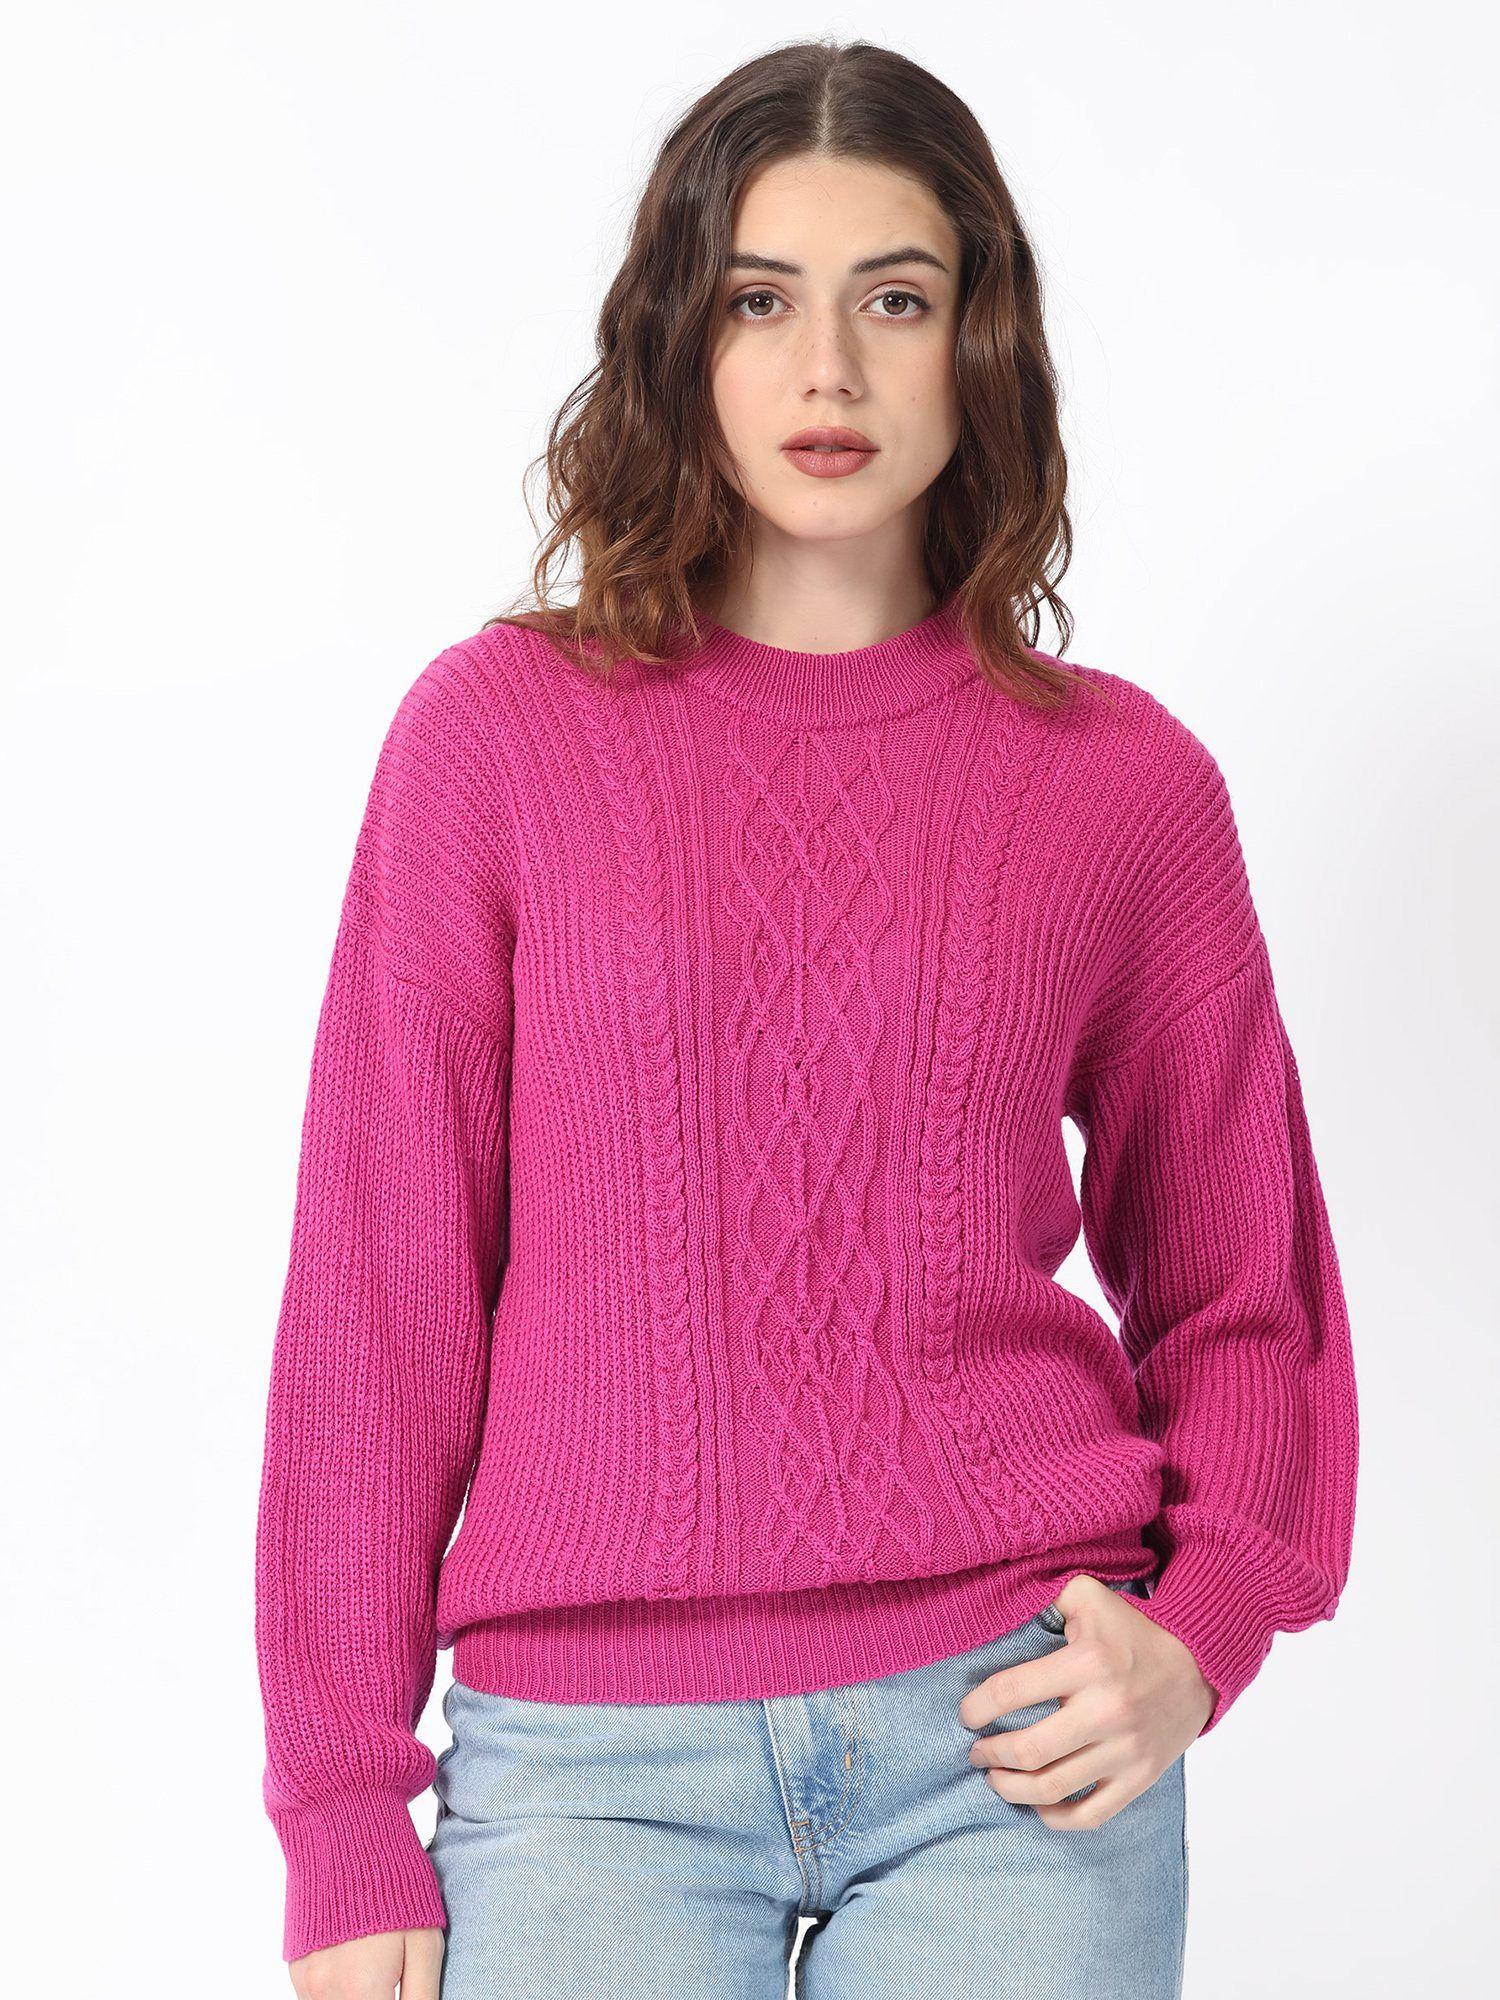 schmitt fluorescent pink knitted sweater